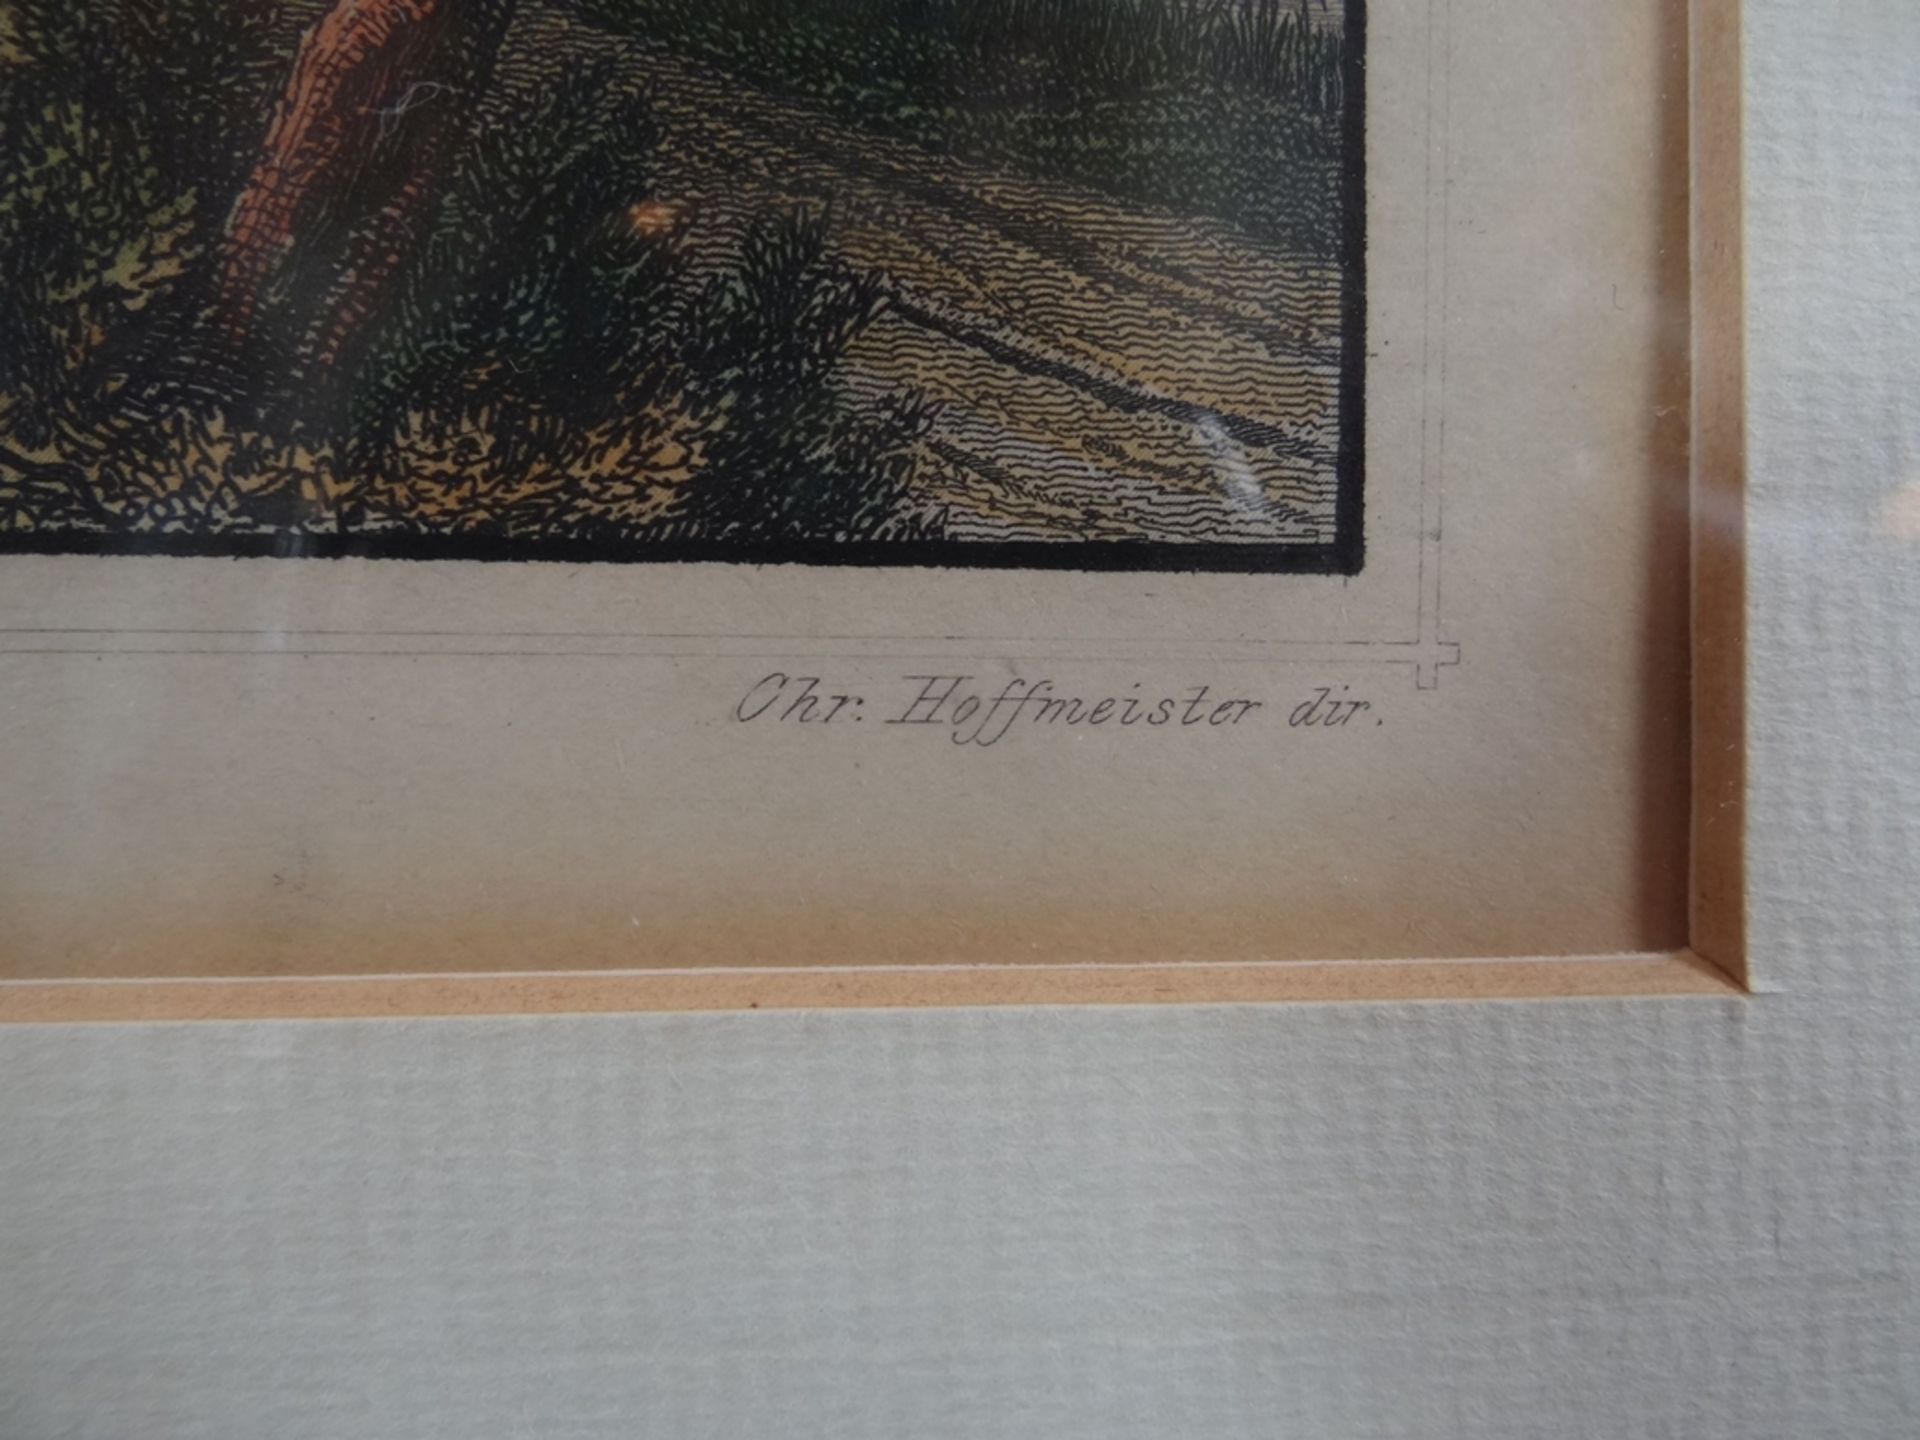 5x Ansichtenstiche um 1840, Hamburg und umzu, koloriert und gut gerahmt, RG je 26x32 cm, - Image 17 of 19